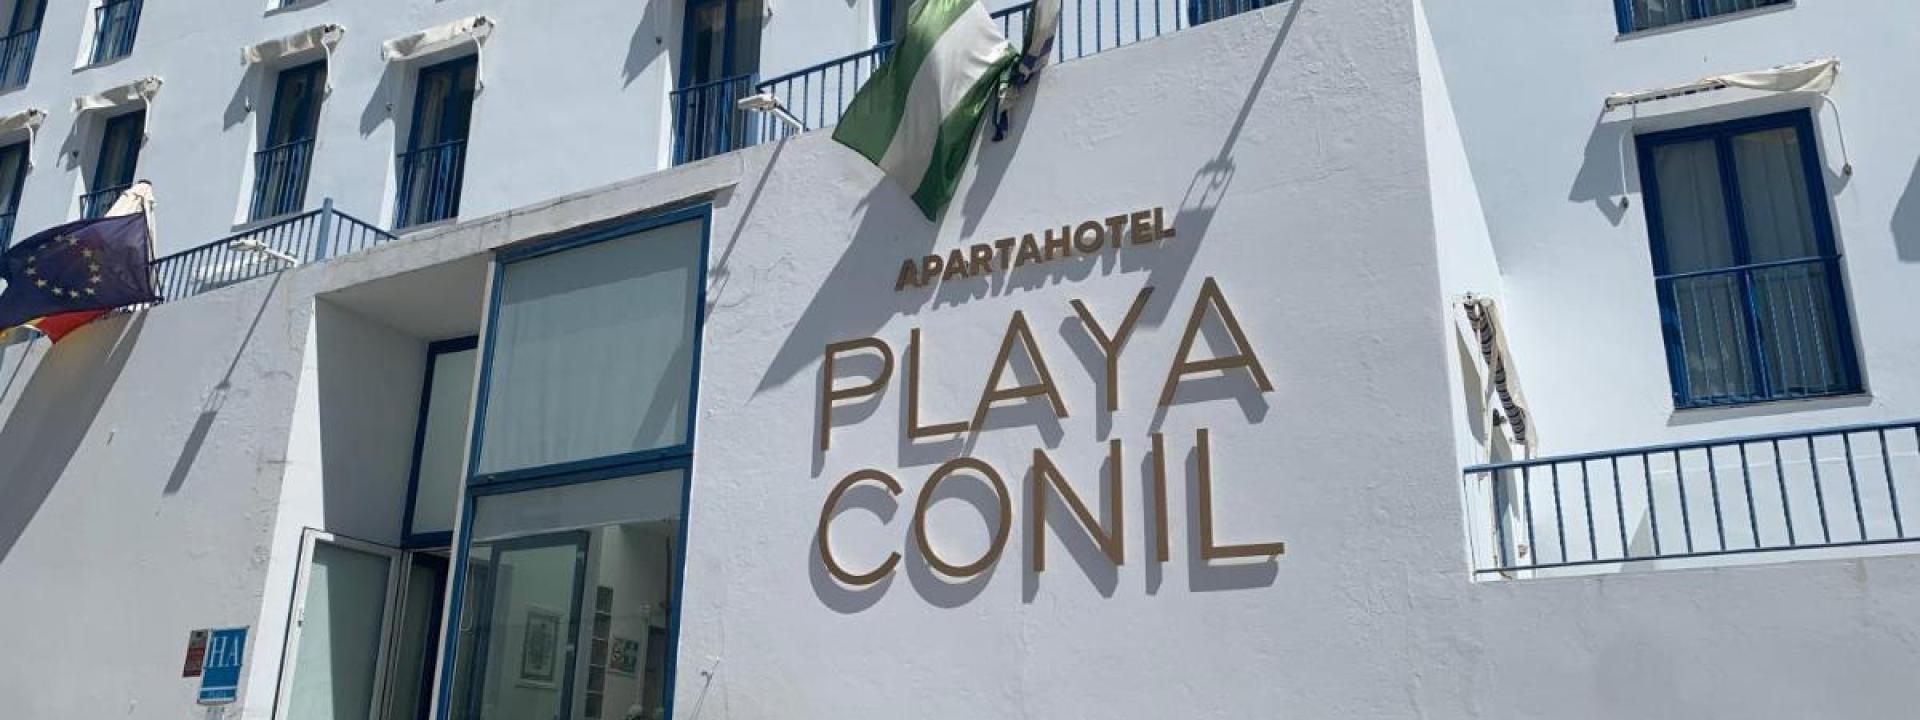 Foto fachada Apartahotel Playa Conil - Fuente internet